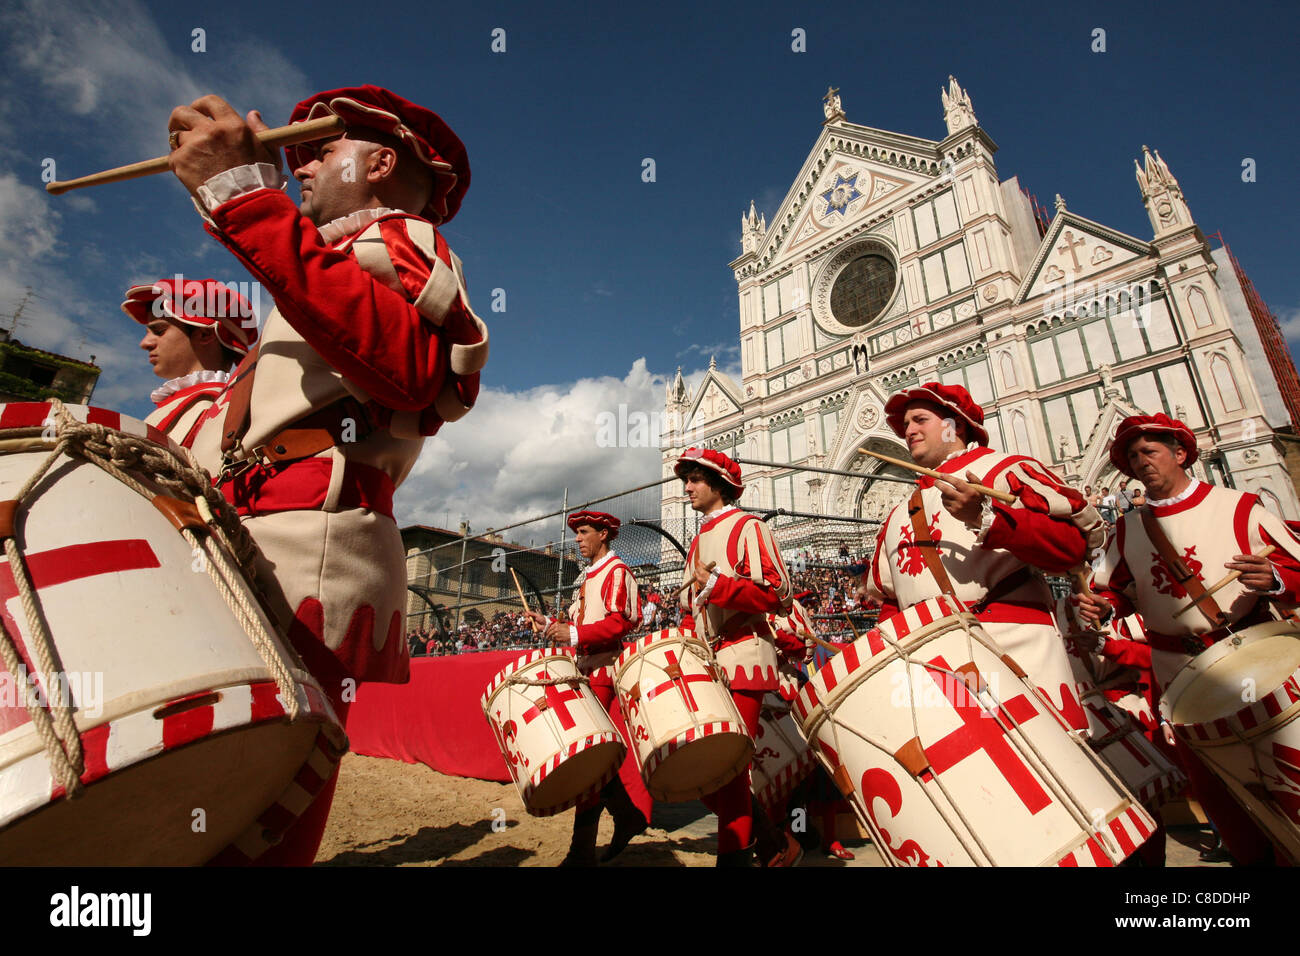 Calcio Storico. La cérémonie d'ouverture de la finale de football historique sur la Piazza di Santa Croce de Florence, Italie. Banque D'Images